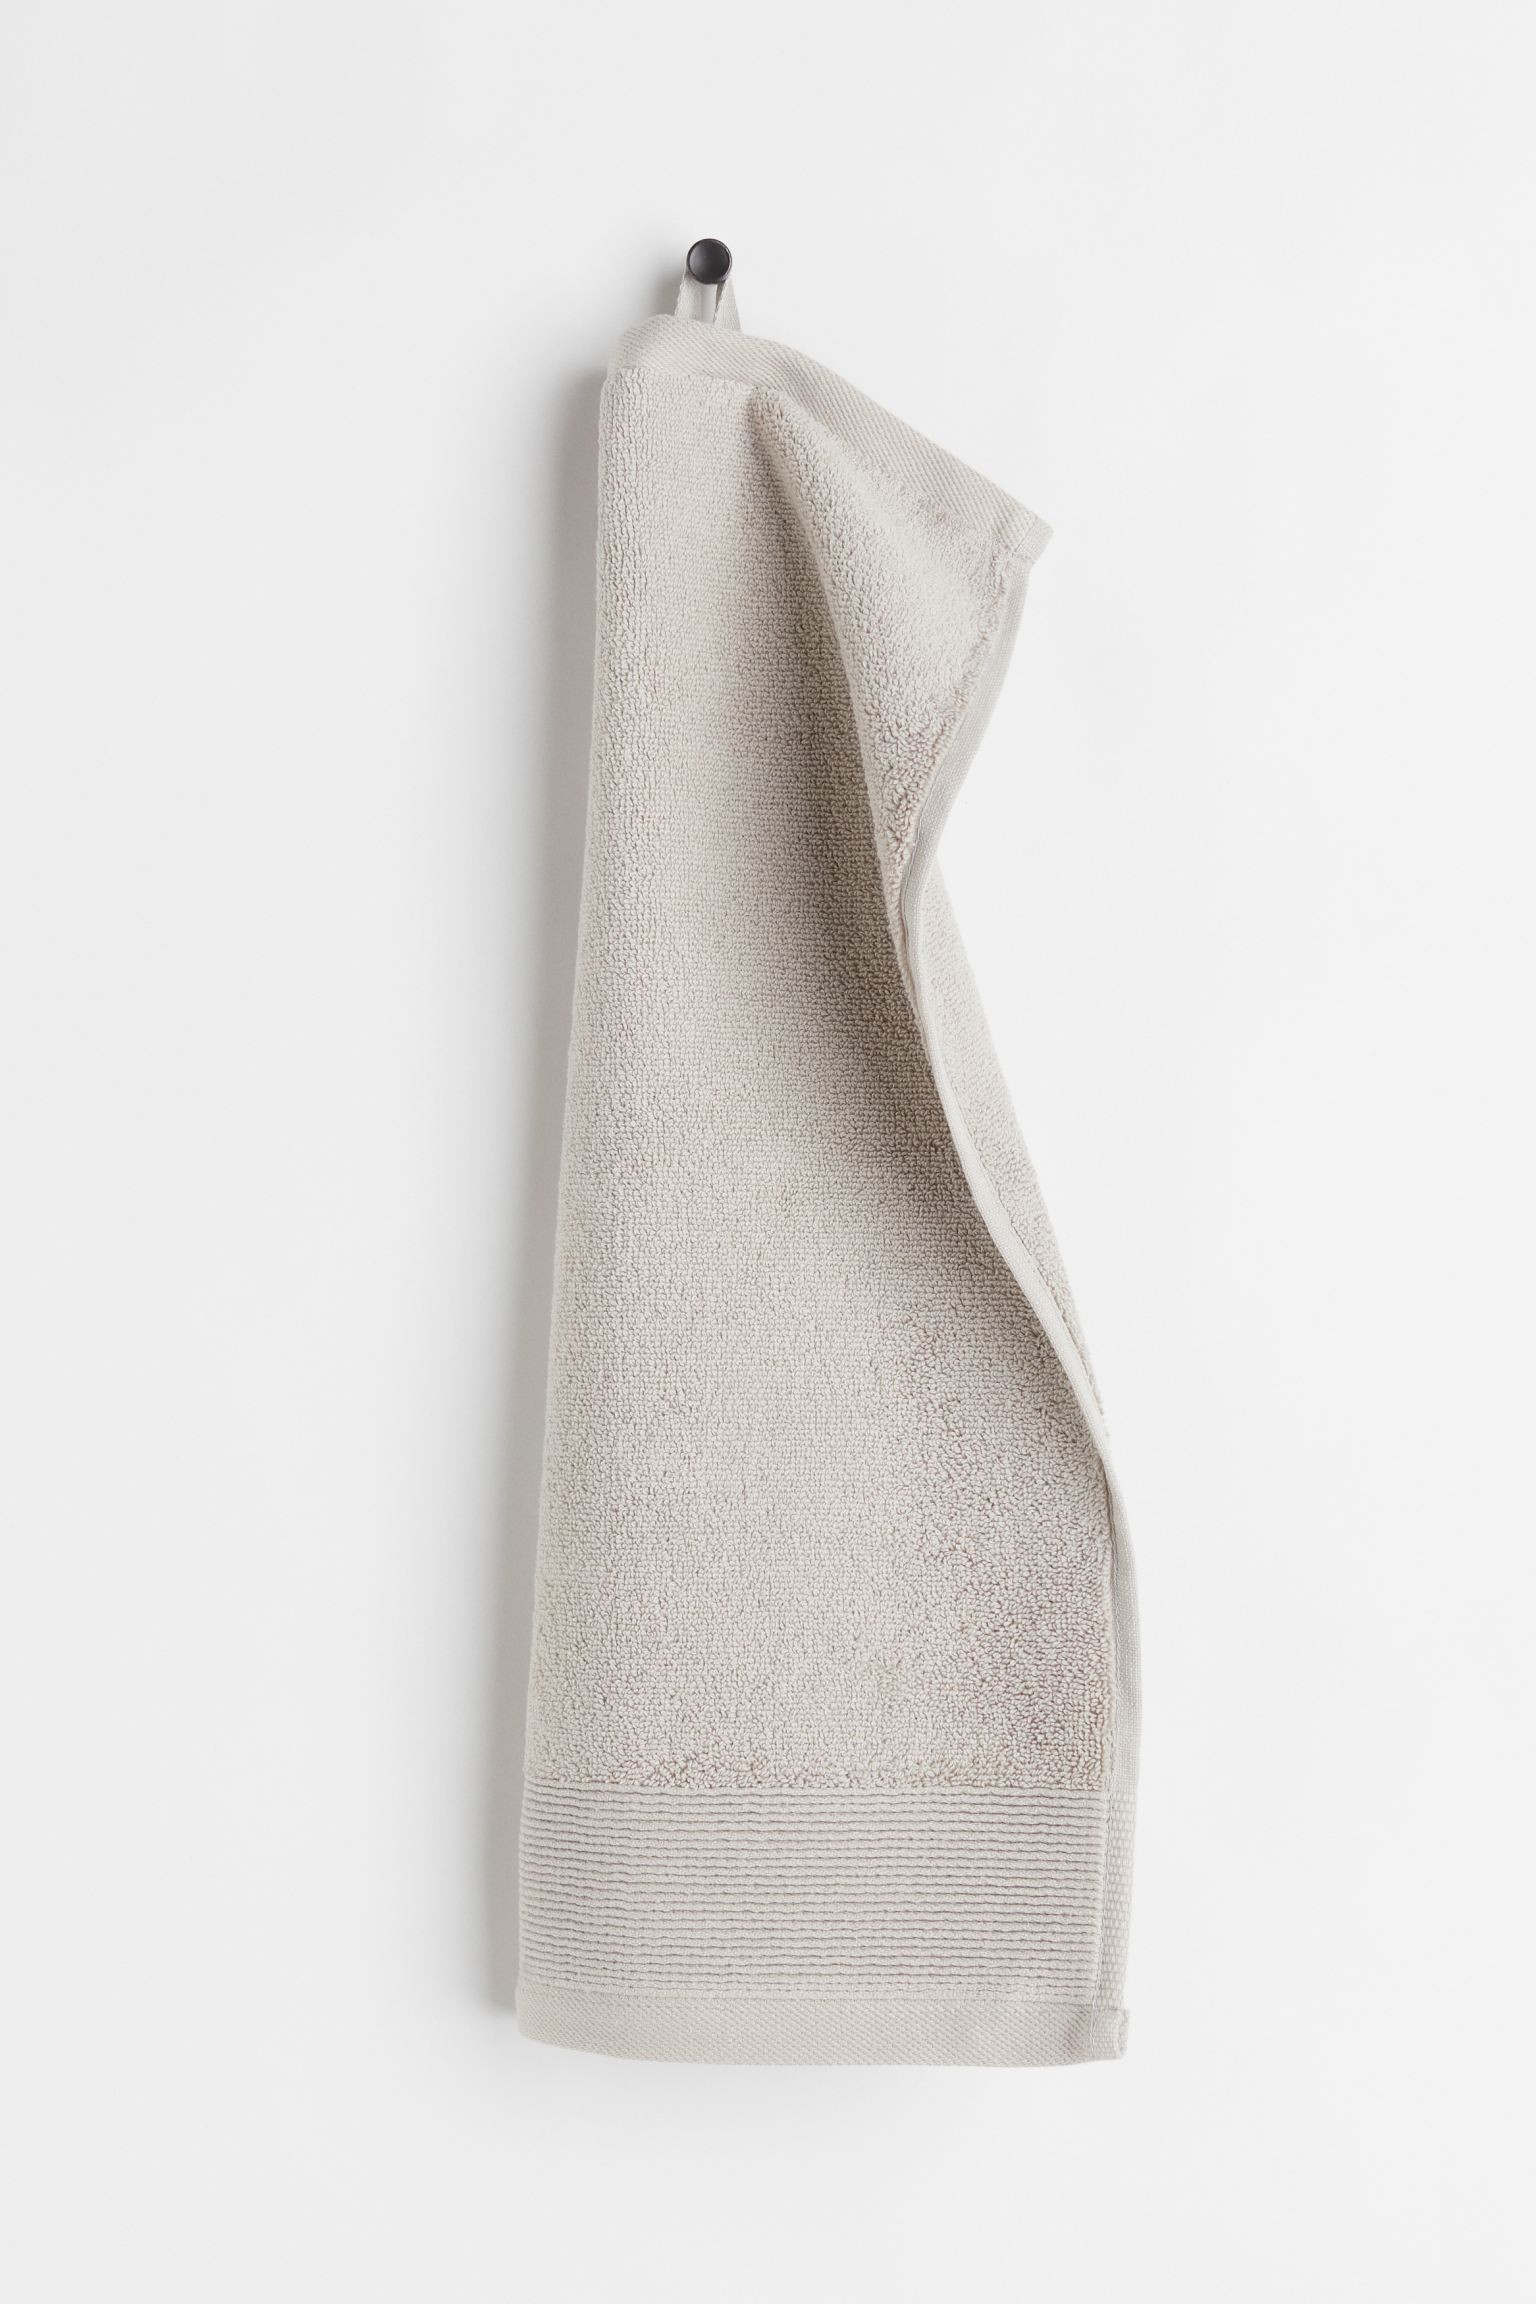 H&M Home Хлопковое махровое полотенце для гостей, Светло-коричневато-серый, 30x50 1074989004 | 1074989004